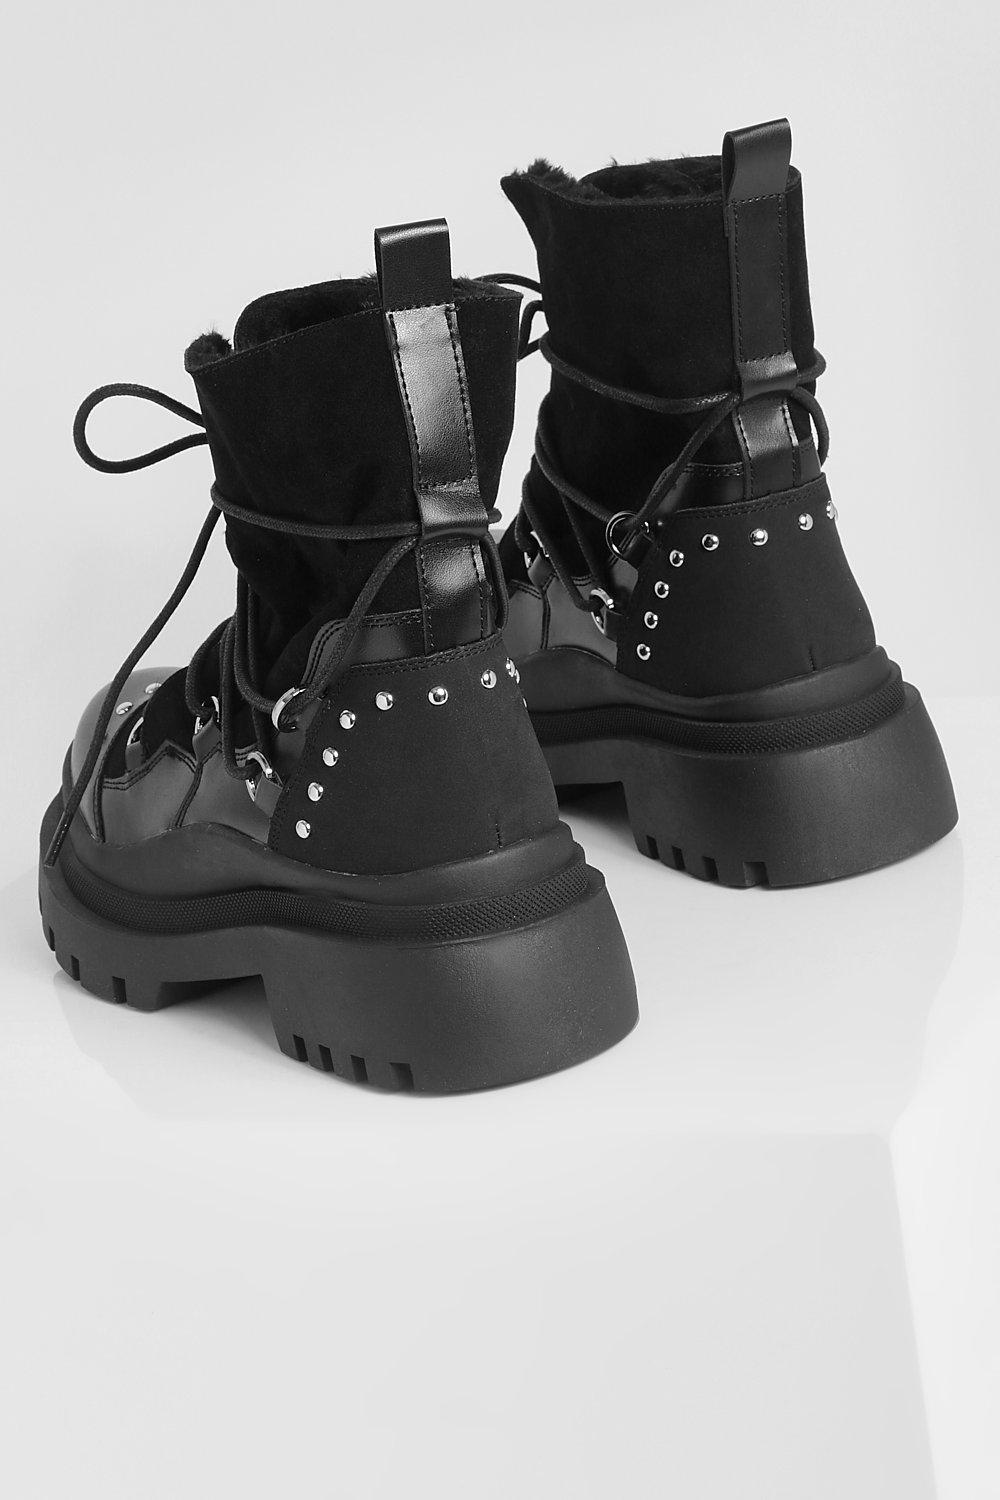 Botas Militares Con Atadura de Boohoo de color Negro Mujer Zapatos de Botas de Botines 